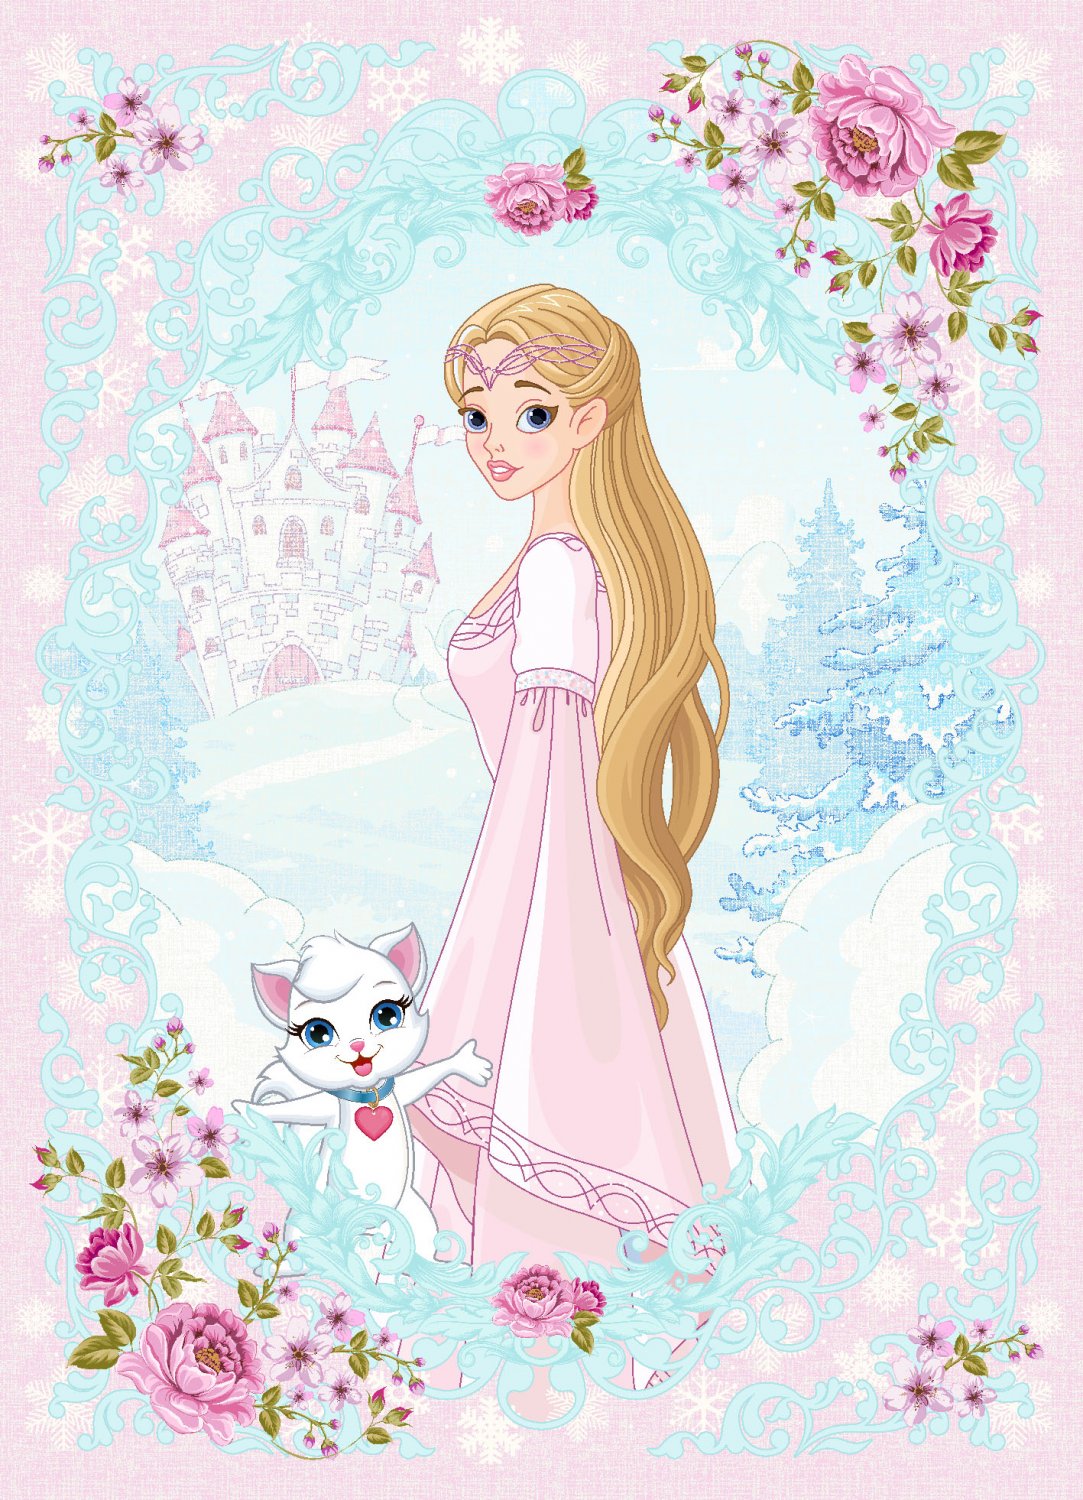 Kindervloerkleed - Fairytale (roze/multi)